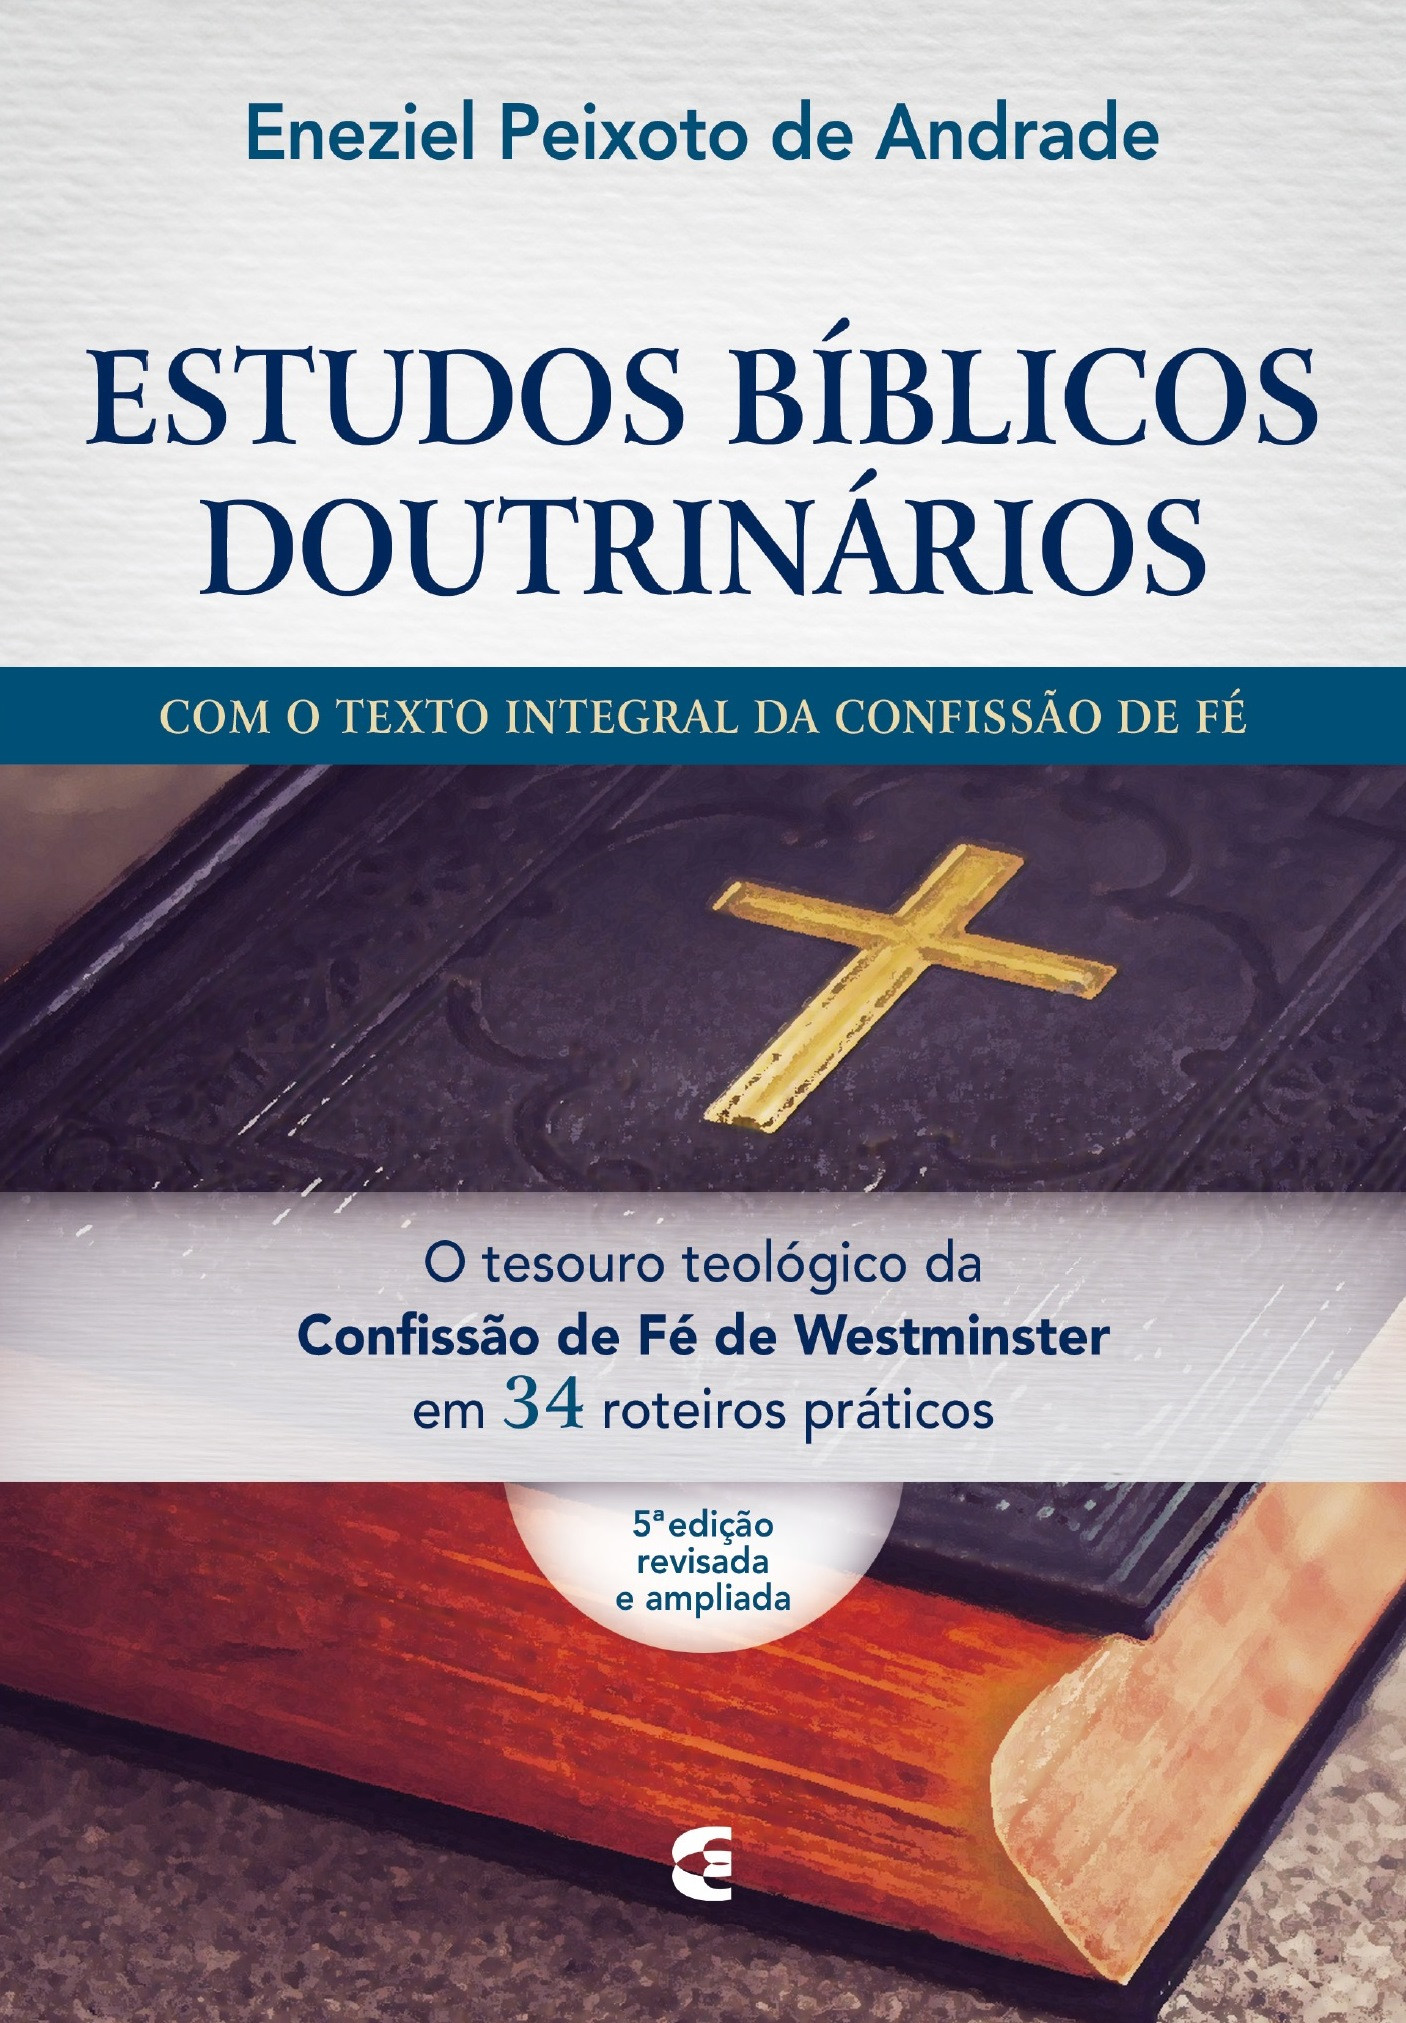 Seleção de Estudos Bíblicos - Estudos Bíblicos